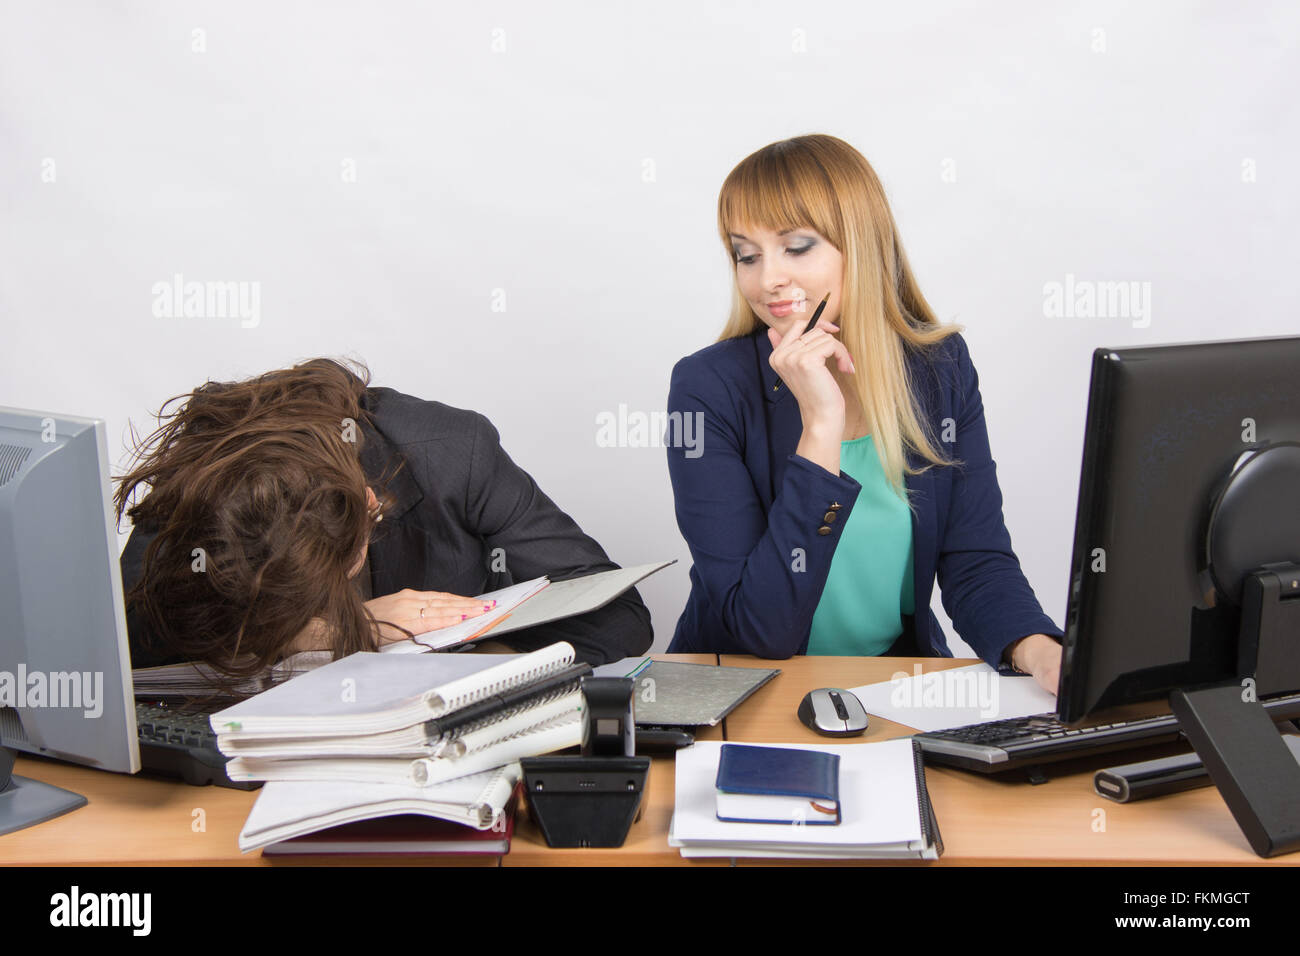 Weiblichen Kollegen im Büro, eine eingeschlafen auf einen Haufen von Ordnern, die zweite mit einem Grinsen schaut sie an Stockfoto